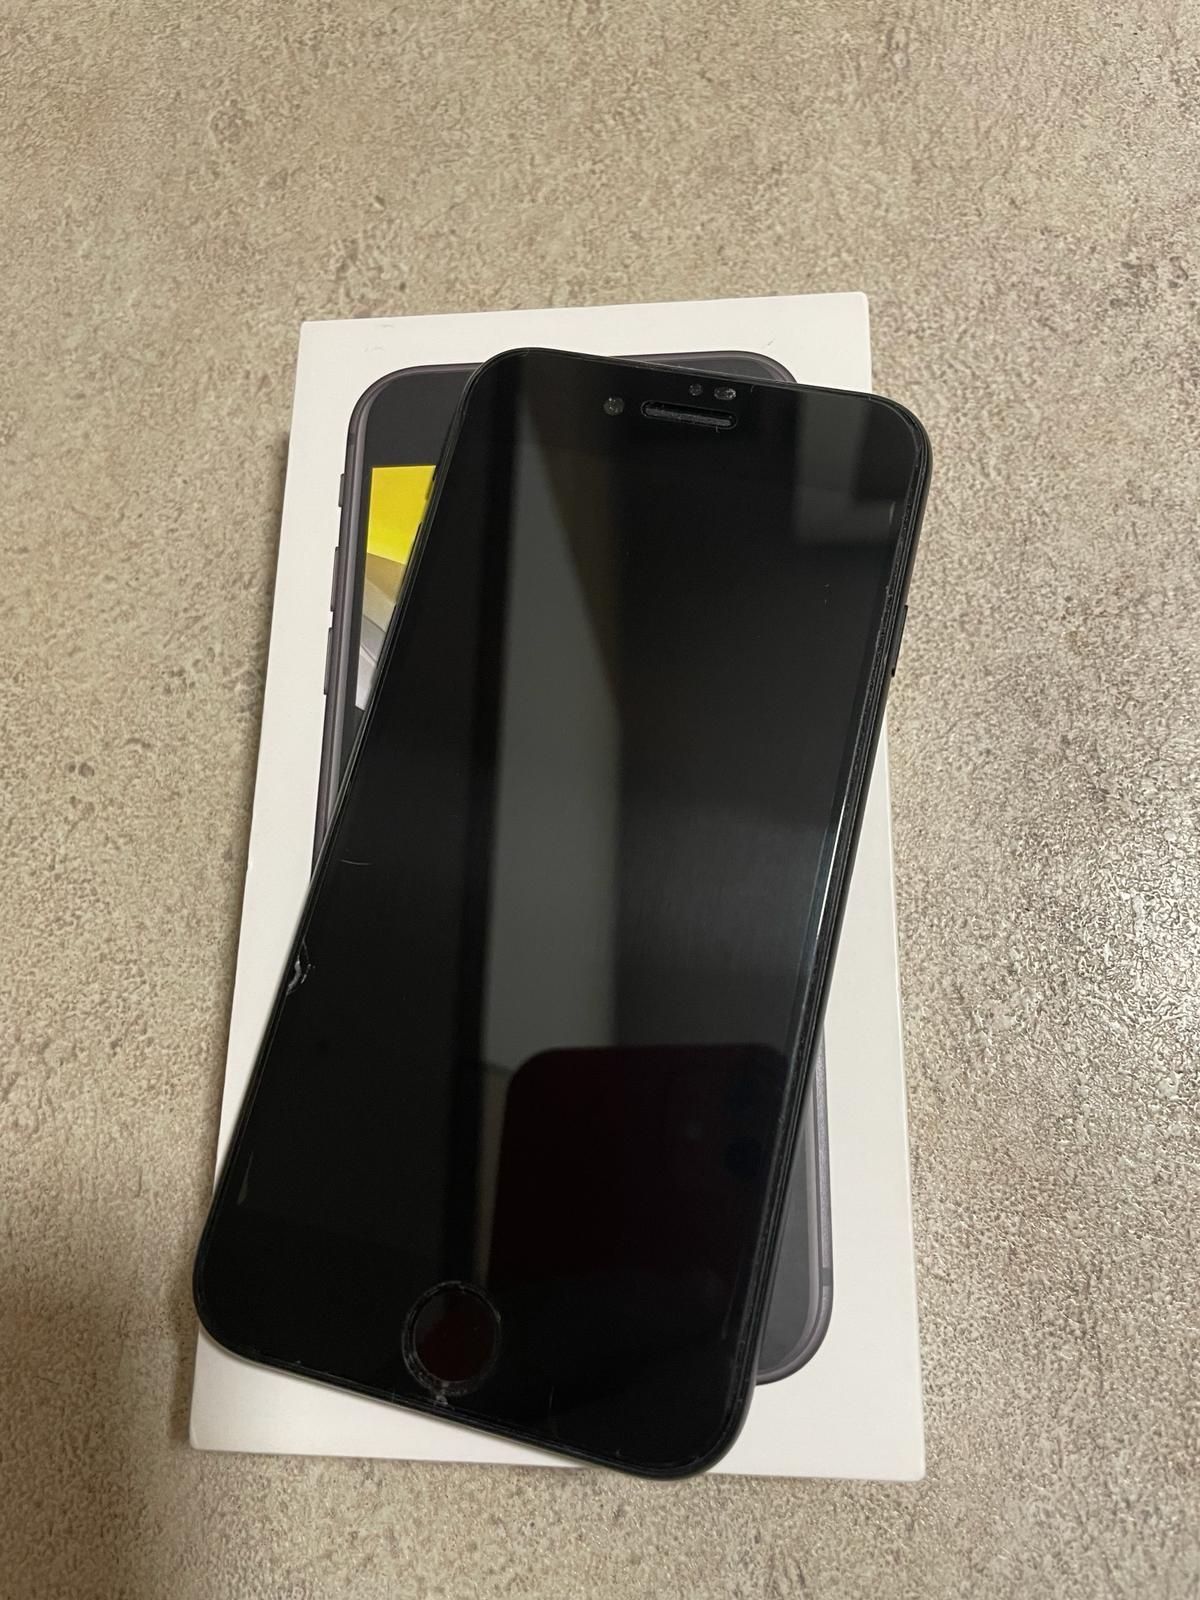 IPhone SE 2020, negru, 64 gb